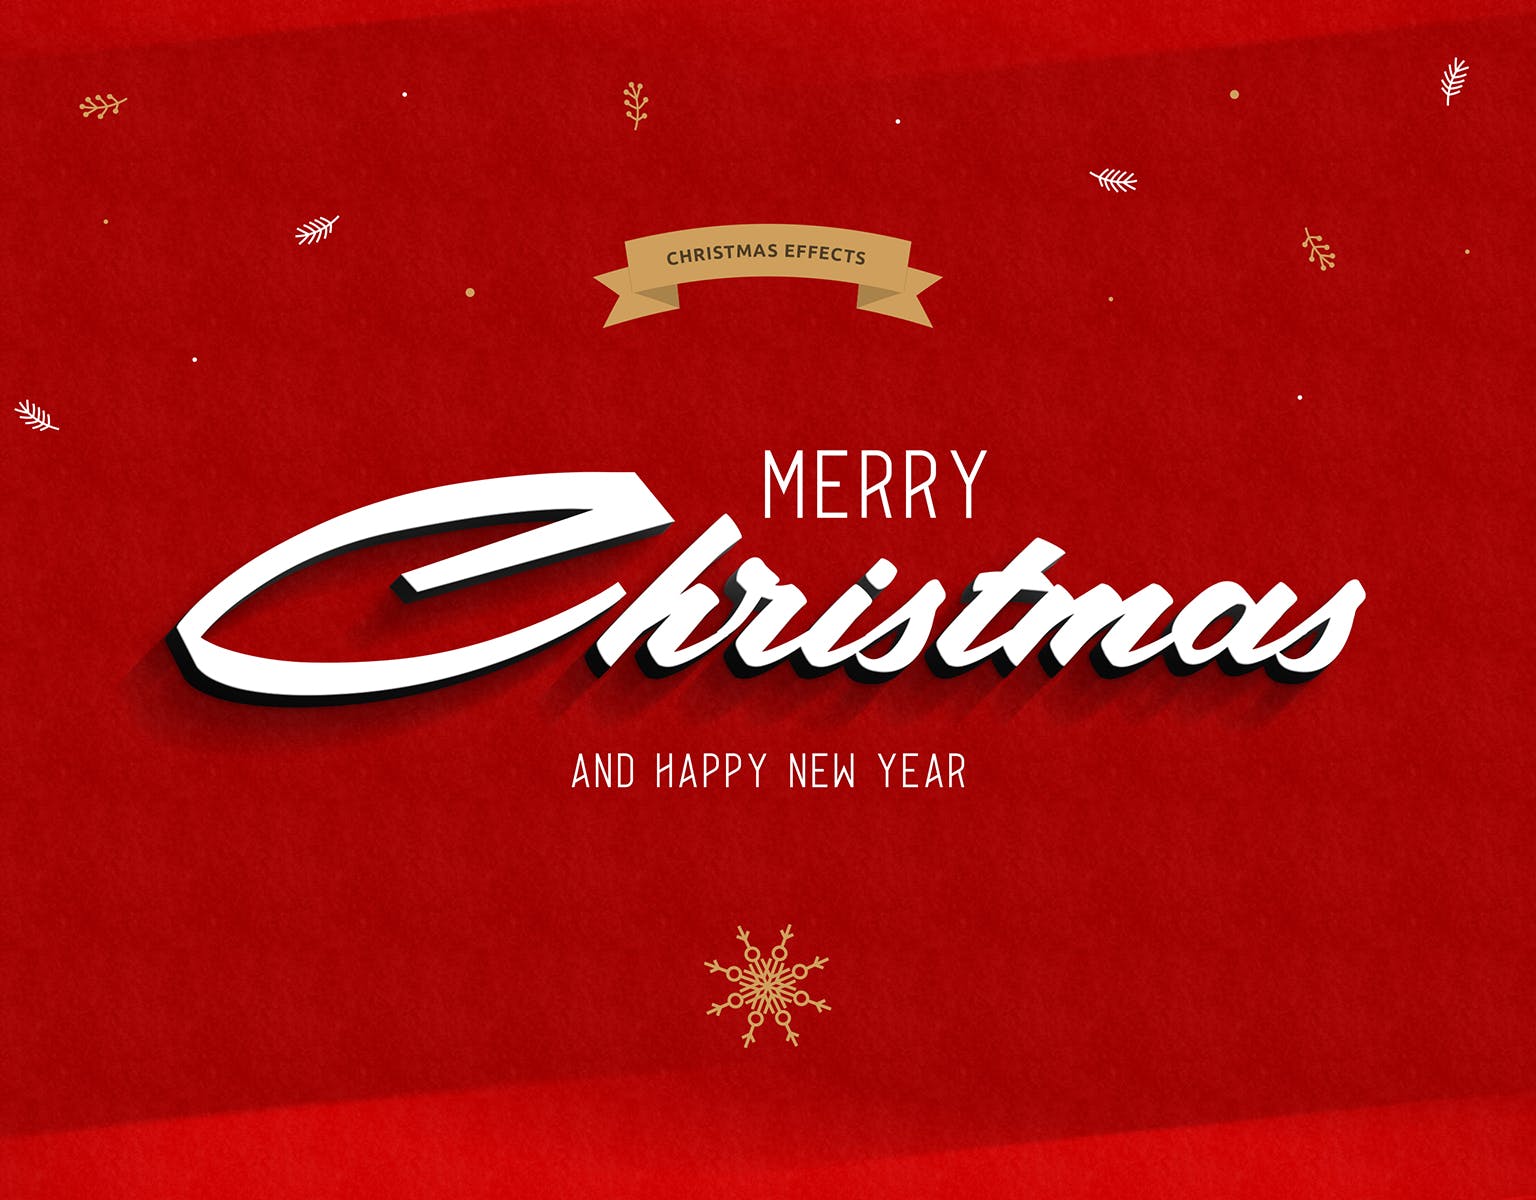 圣诞节主题海报文字样式PSD分层模板 Christmas Text Effects插图(2)